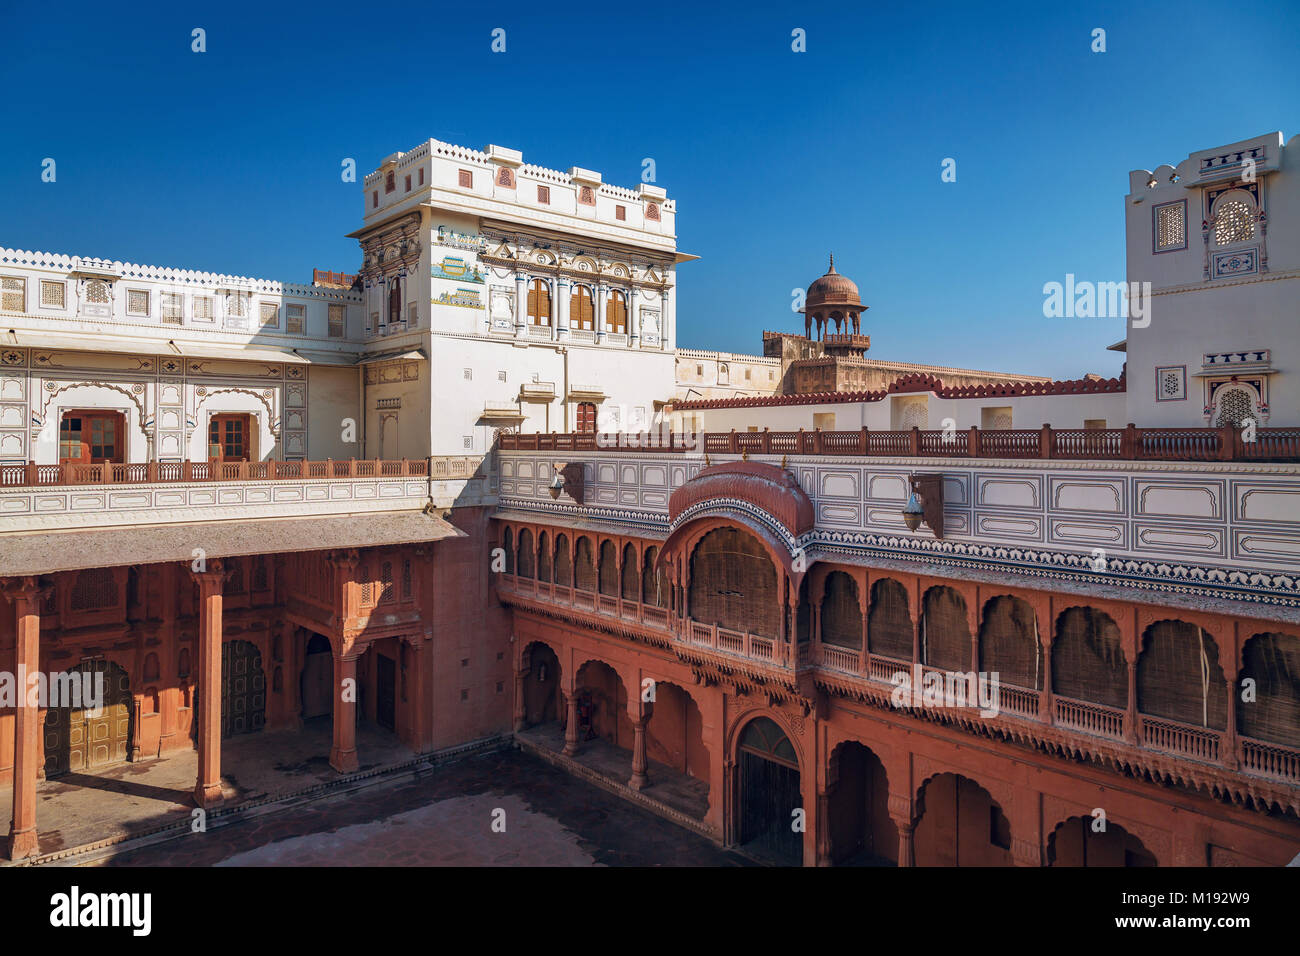 Junagarh Fort Bikaner Stadt Rajasthan. Das historische Fort mit rotem Sandstein und weißem Marmor mit Schnitzereien und Wall Art gebaut Stockfoto